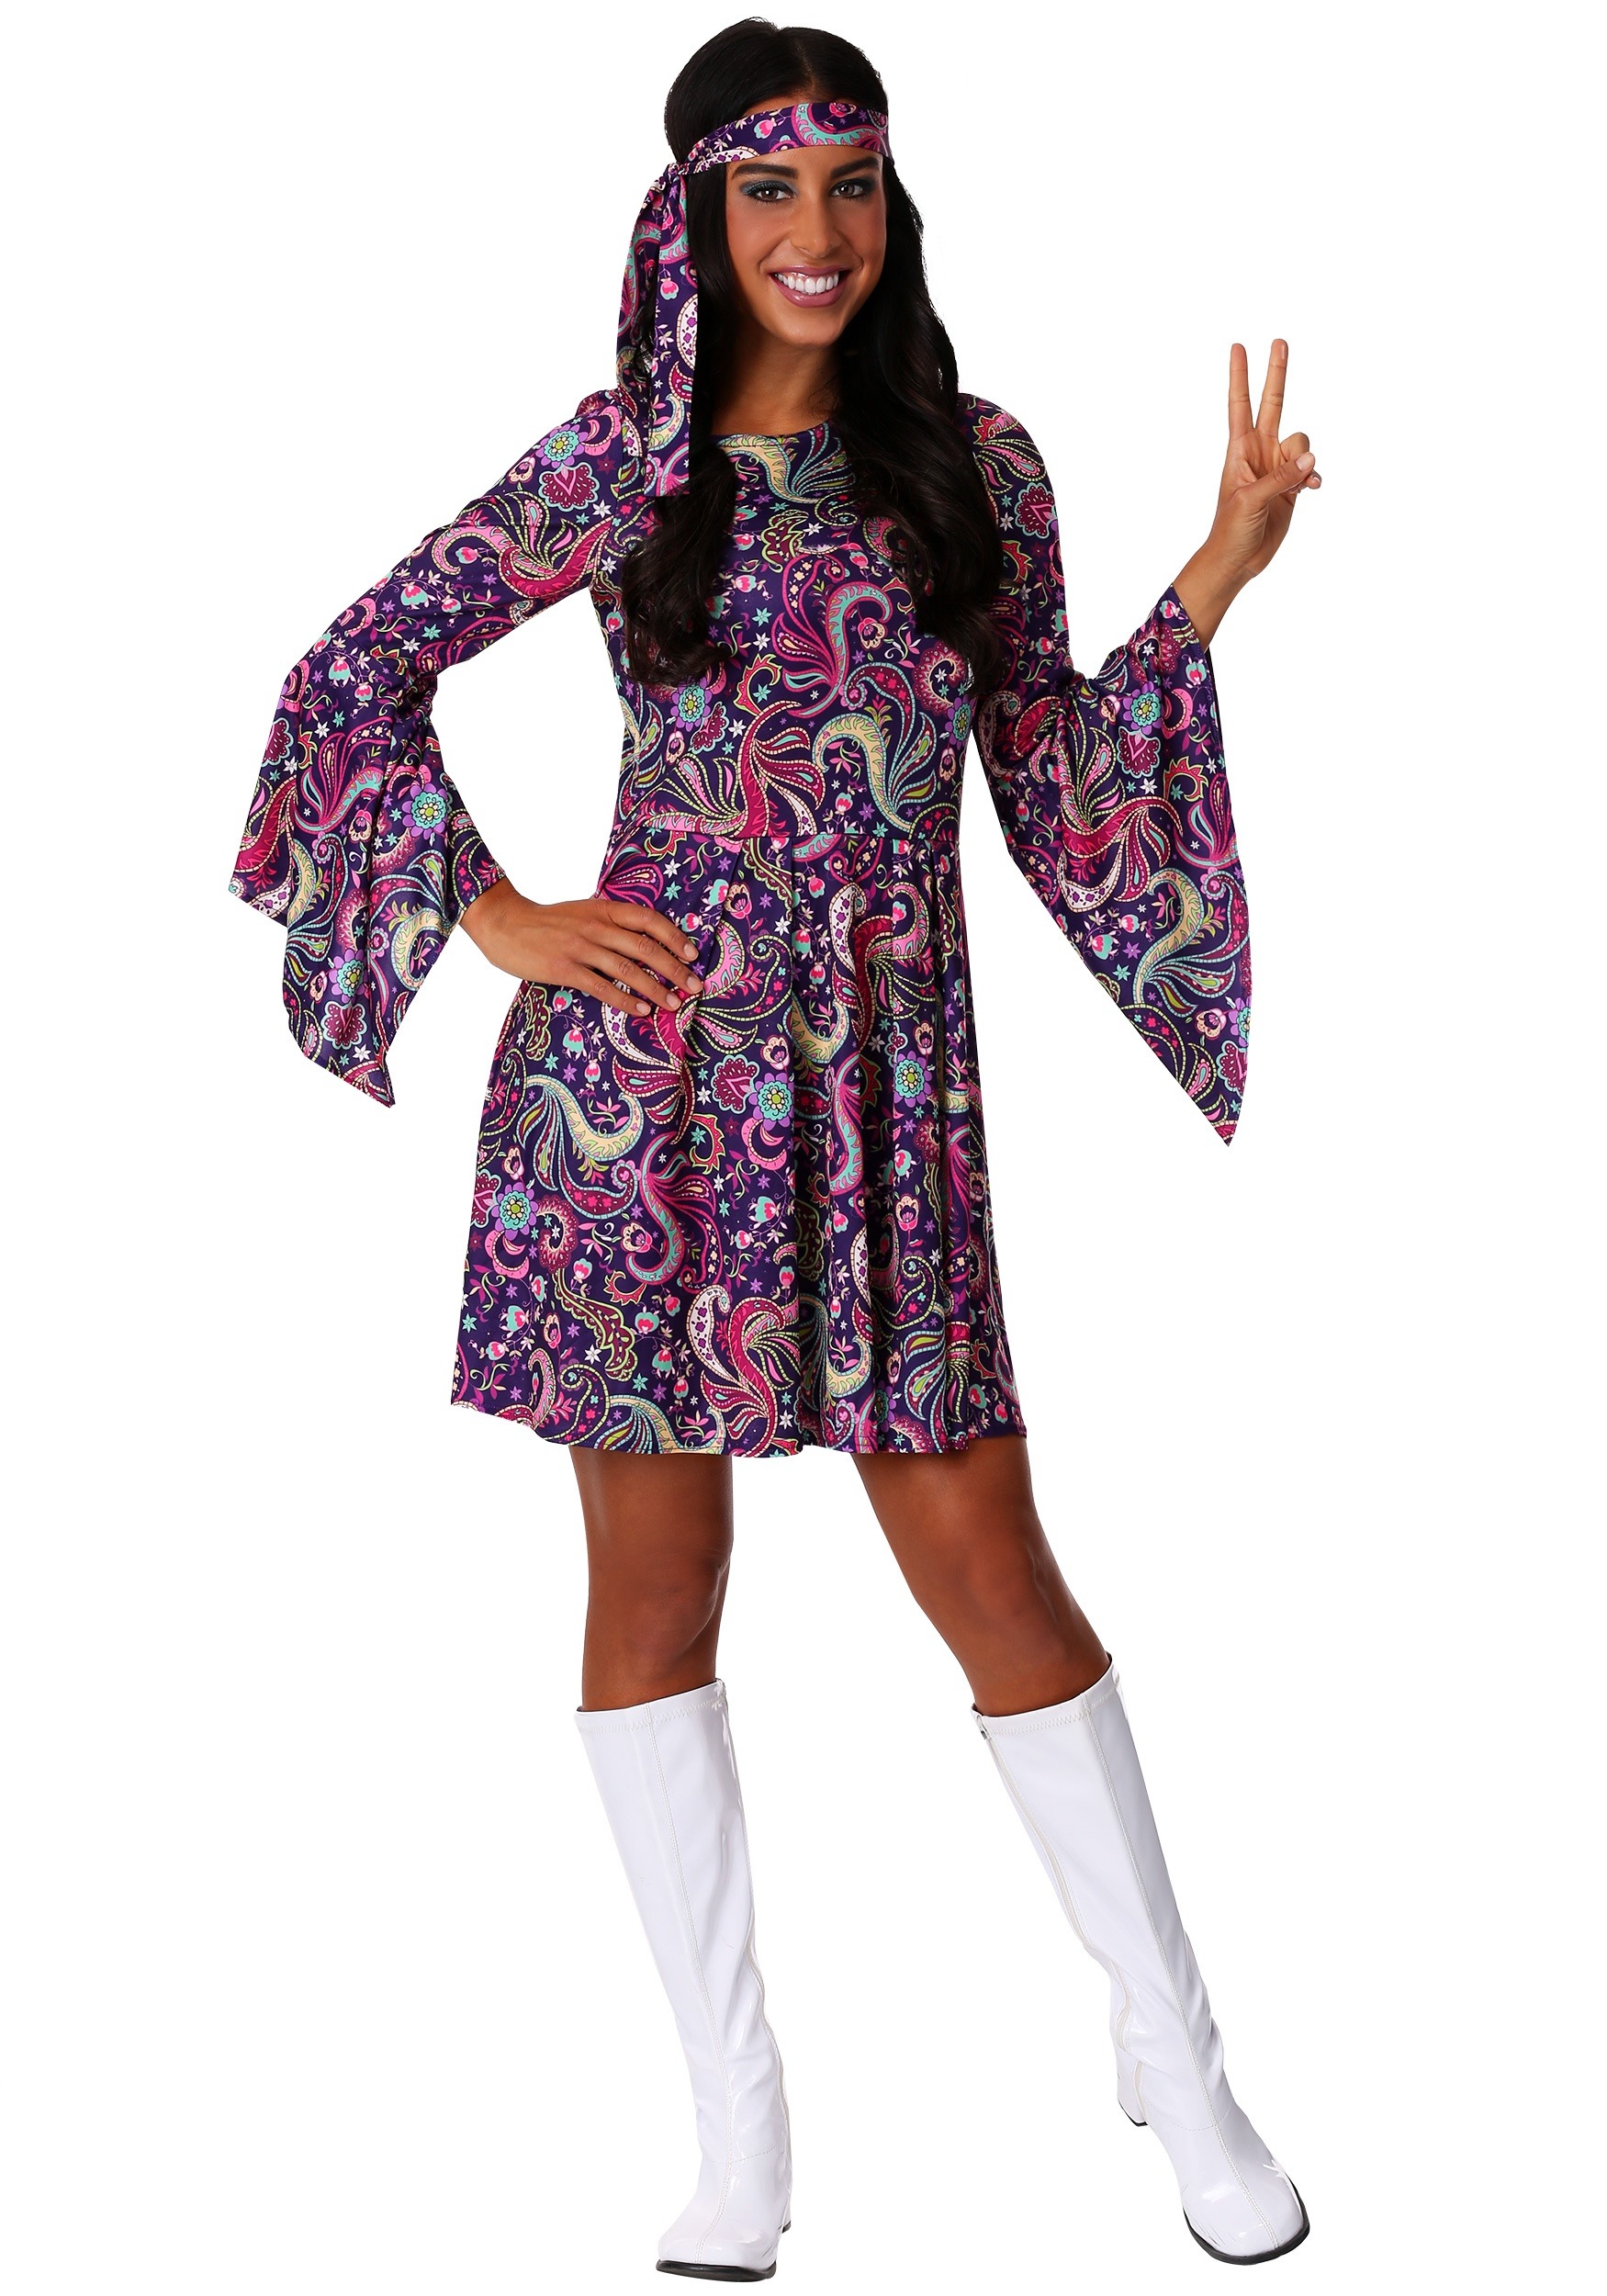 Woodstock Hippie Women's Costume